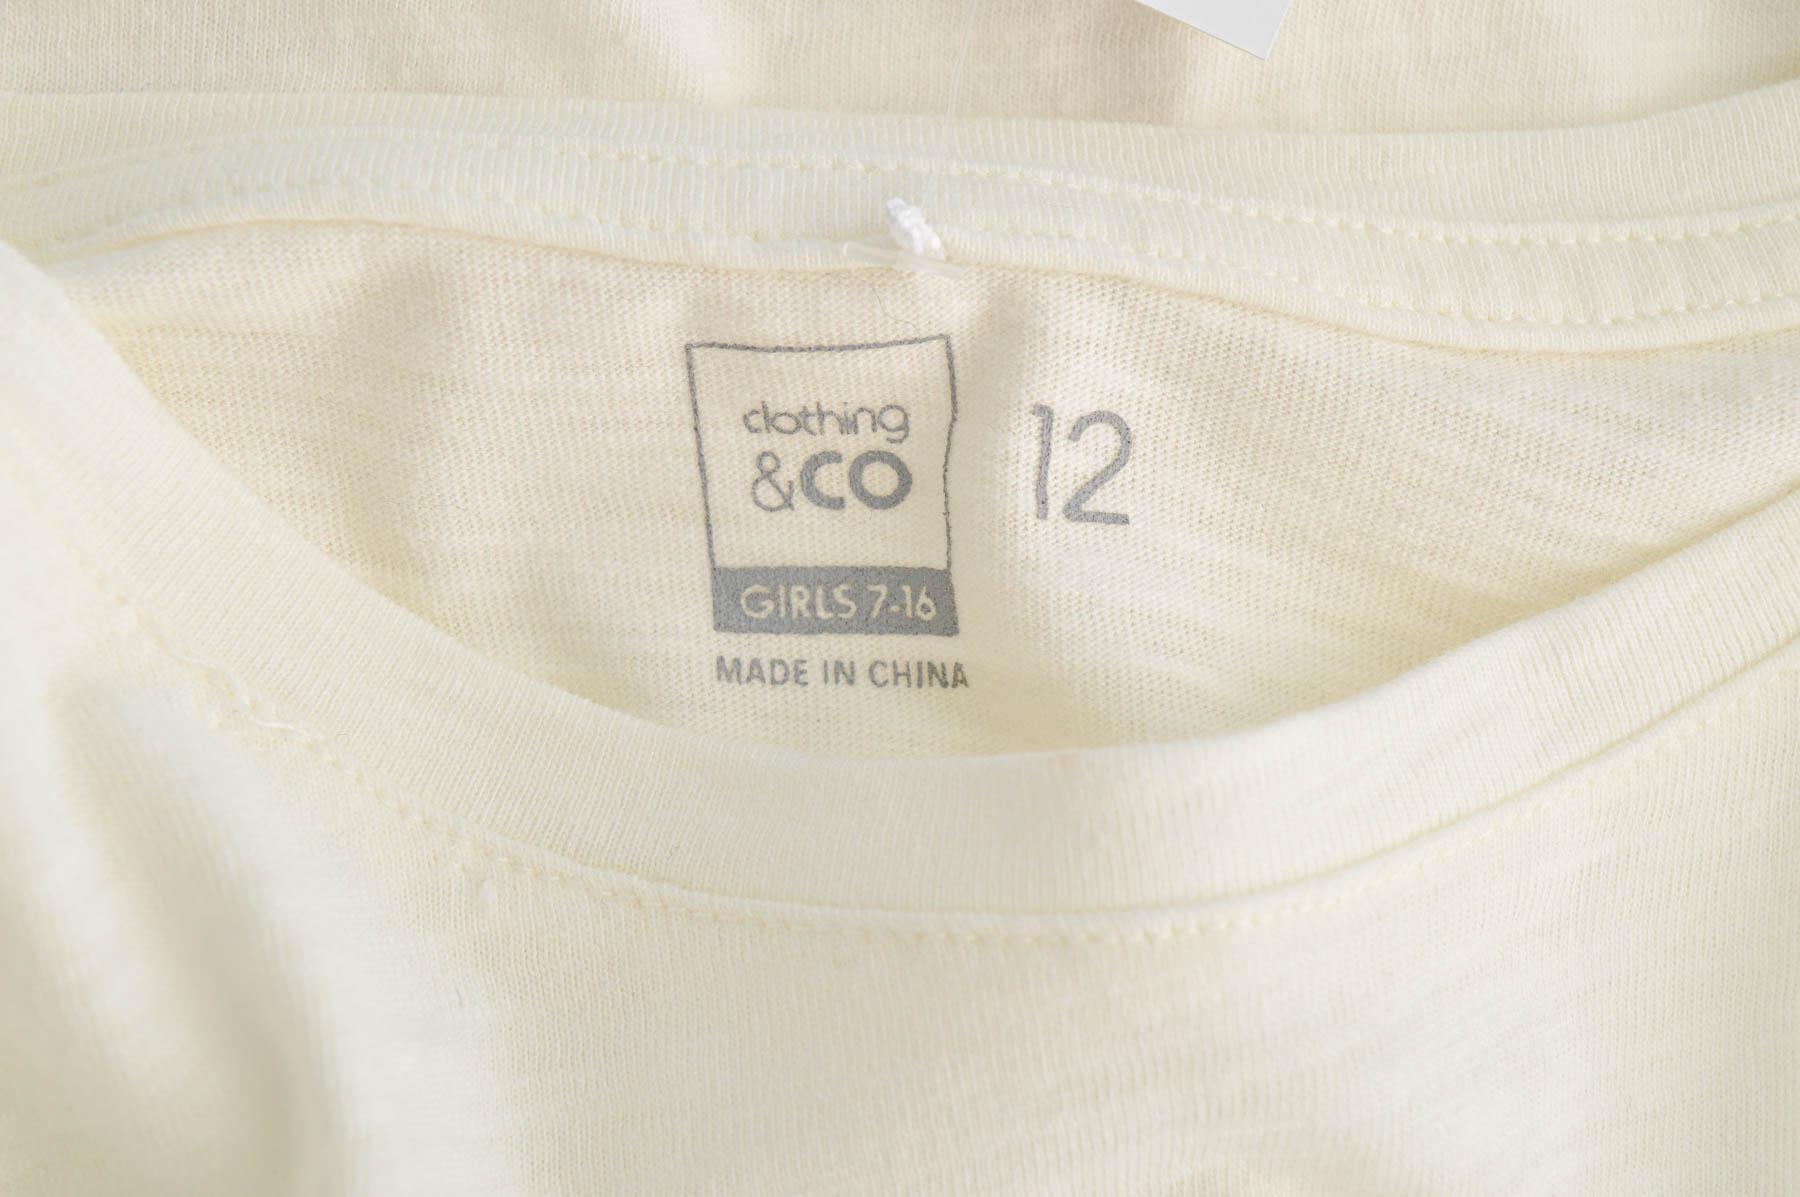 Μπλούζα για κορίτσι - Clothing & CO - 2